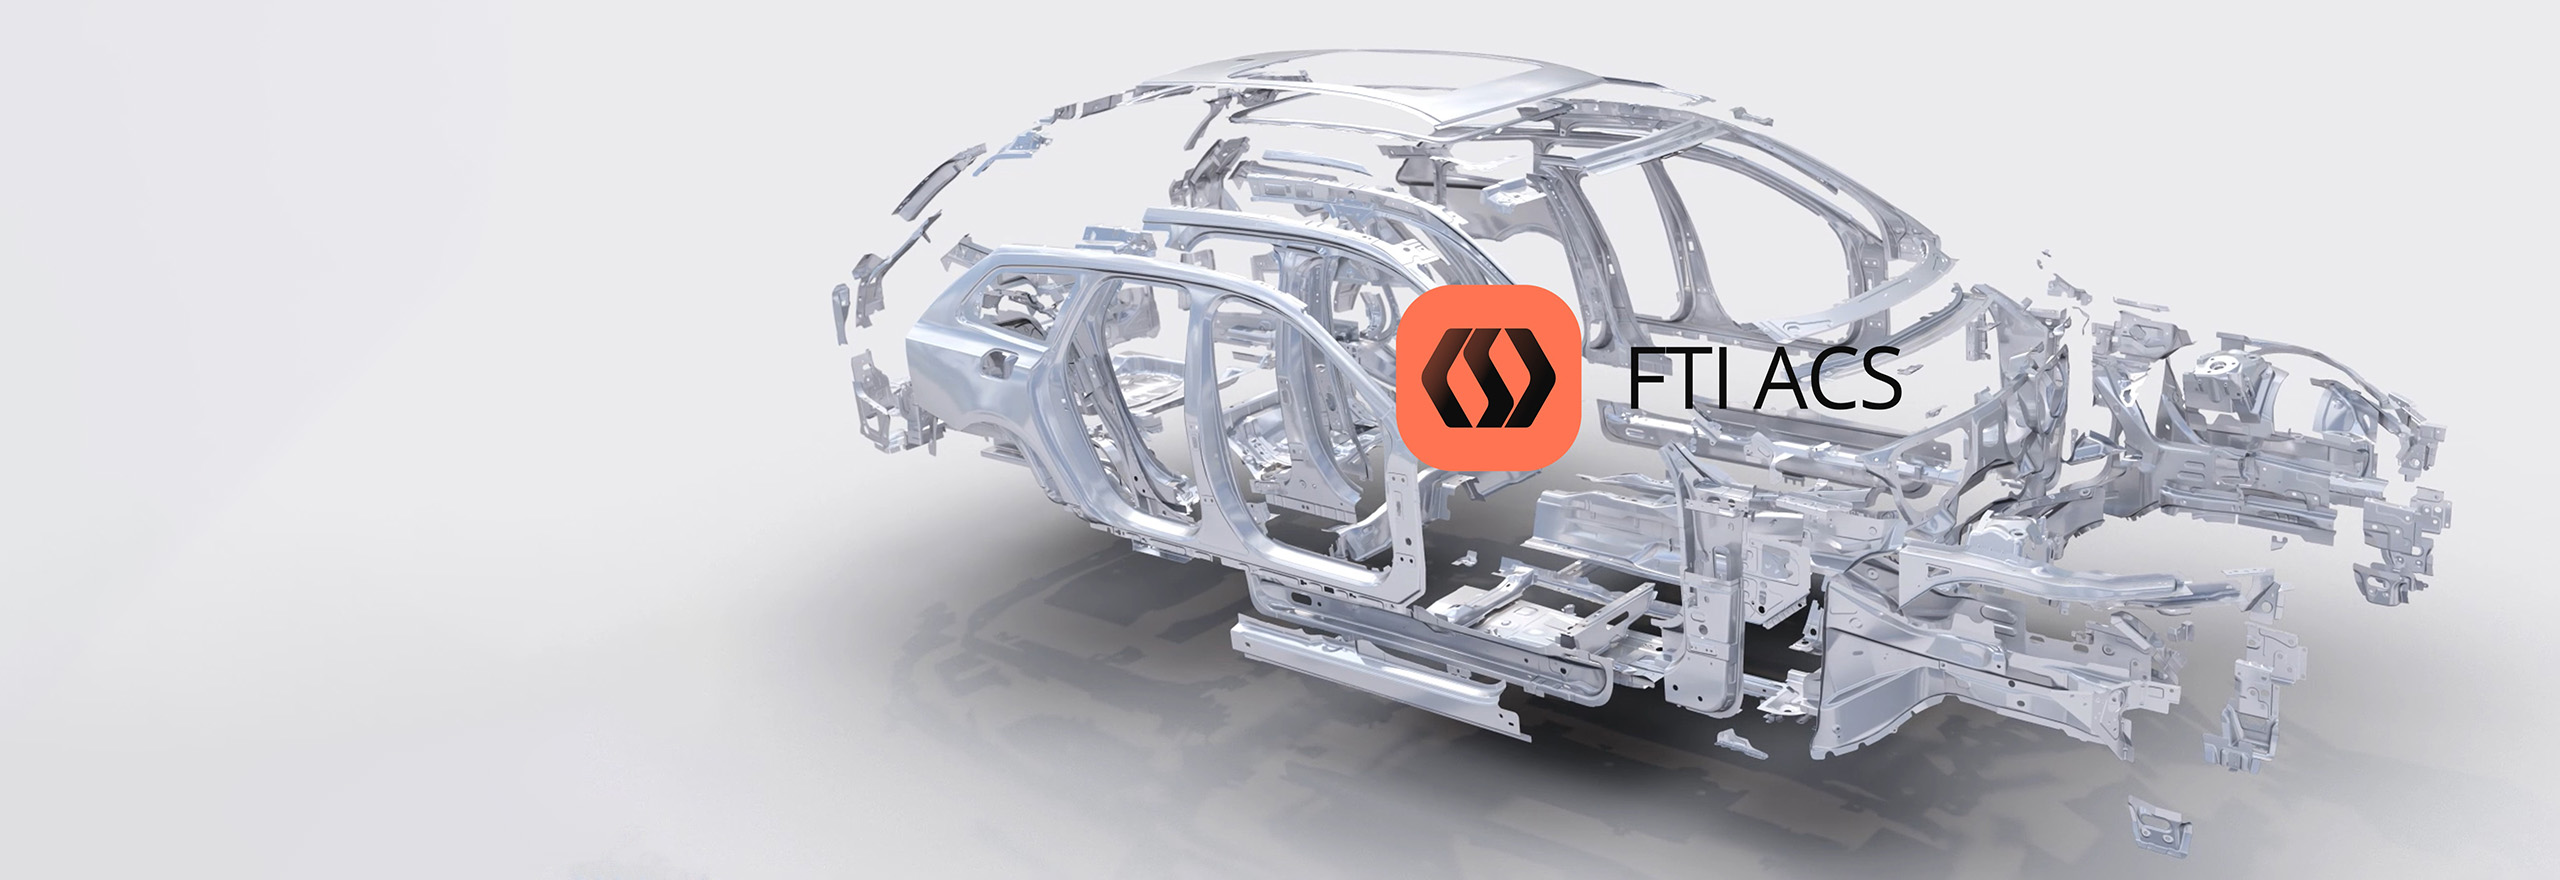 Logiciel de tôlerie FTI ACS pour l’industrie automobile – simulation de pièces automobiles éclatées